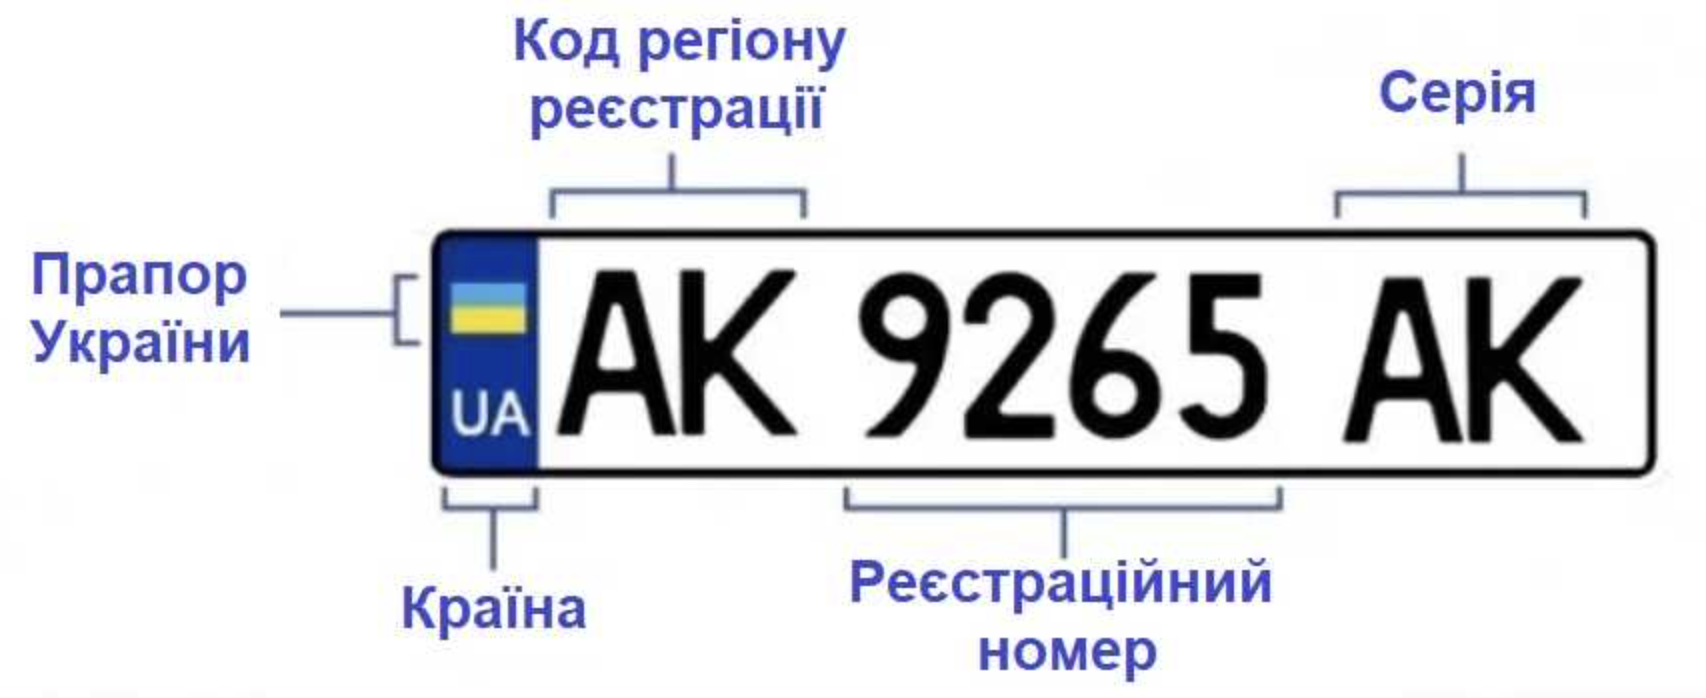 Номер ucid на карте. Обозначение автомобильных номеров Украины. Номерные знаки регионов Украины. Автомобильные номера Украины по регионам расшифровка. Номера Украины автомобильные.